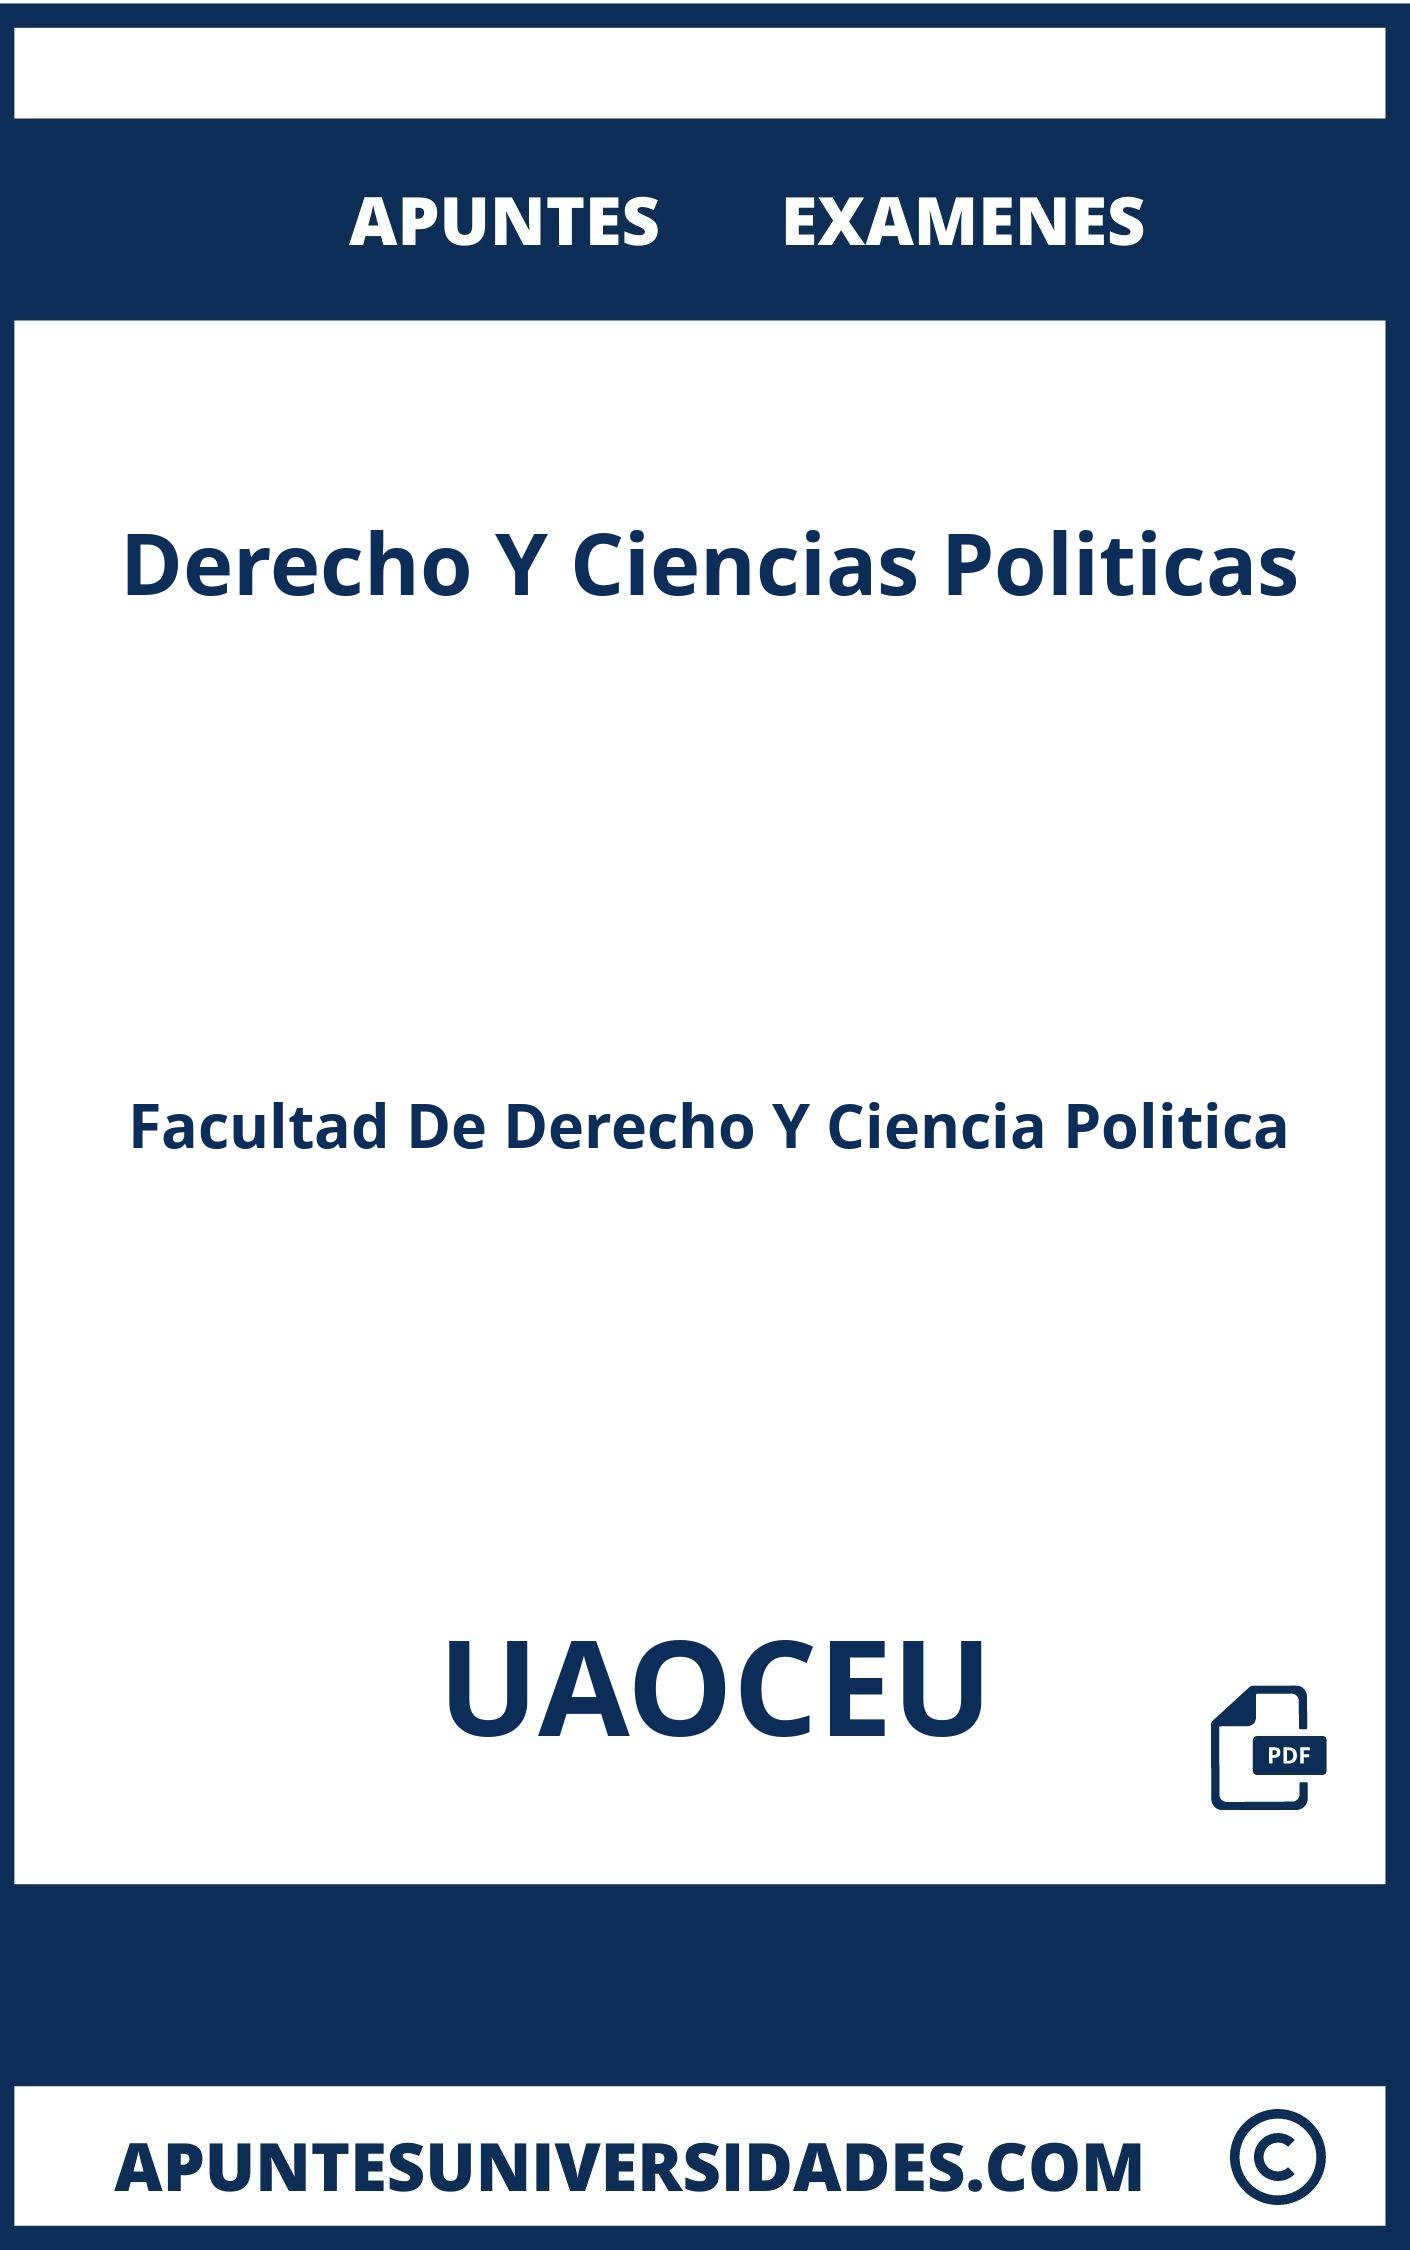 Apuntes Examenes Derecho Y Ciencias Politicas UAOCEU